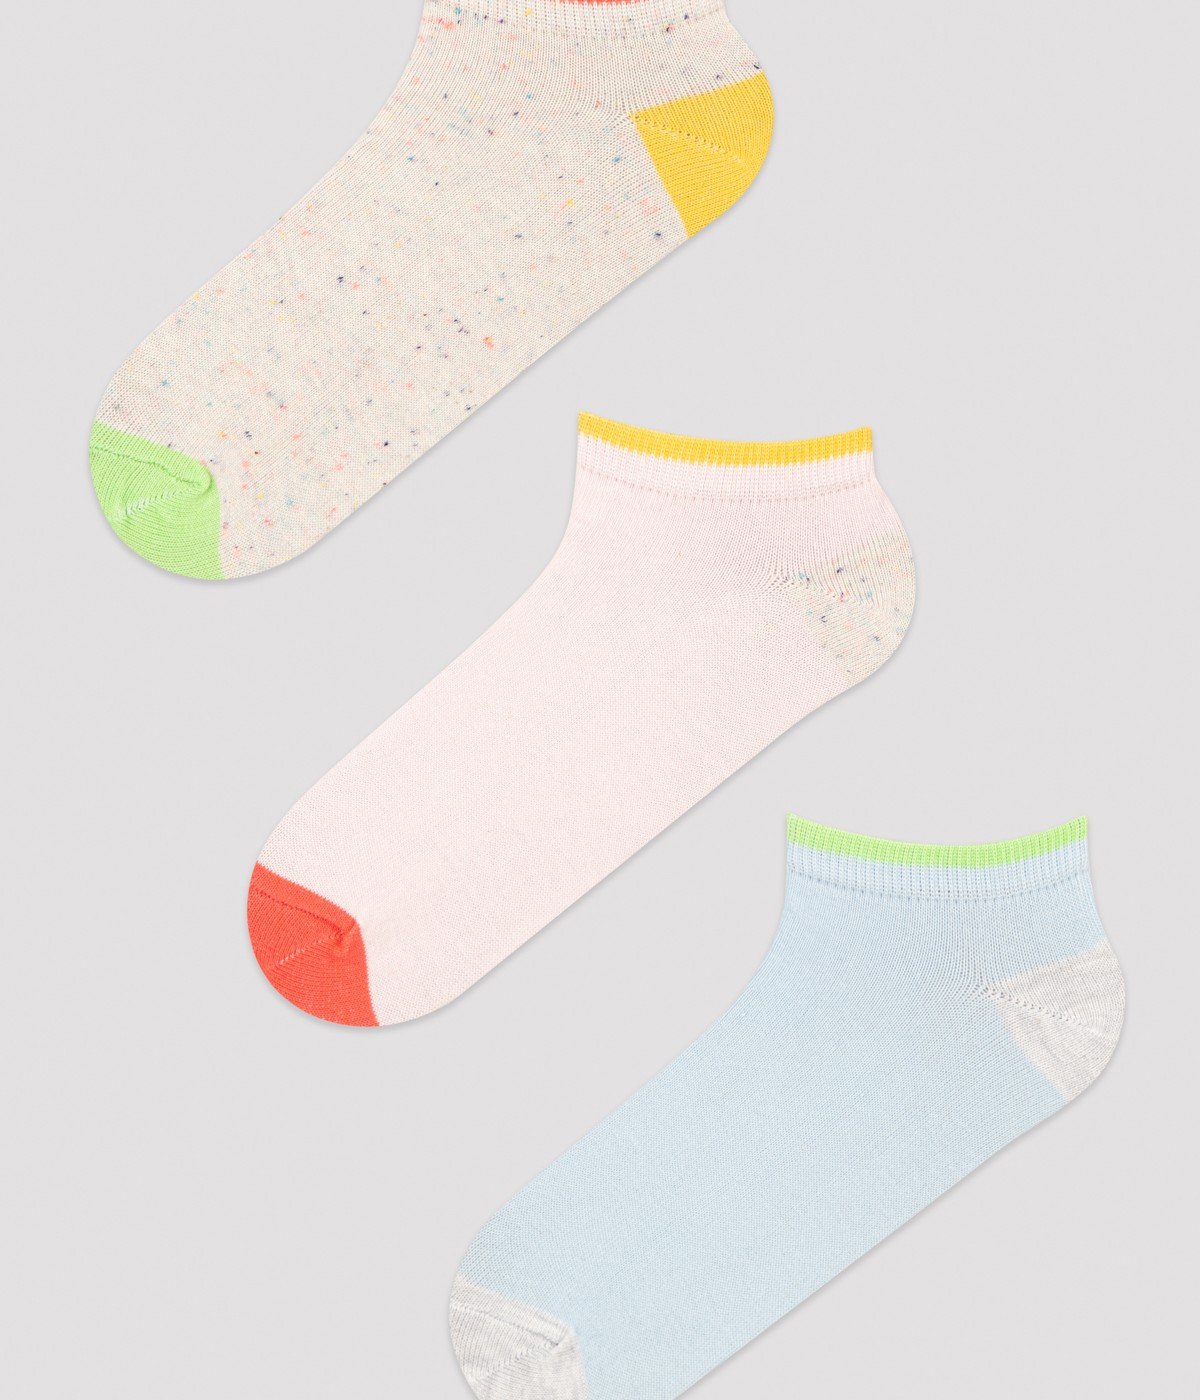 Keira 3In1 Liner Socks